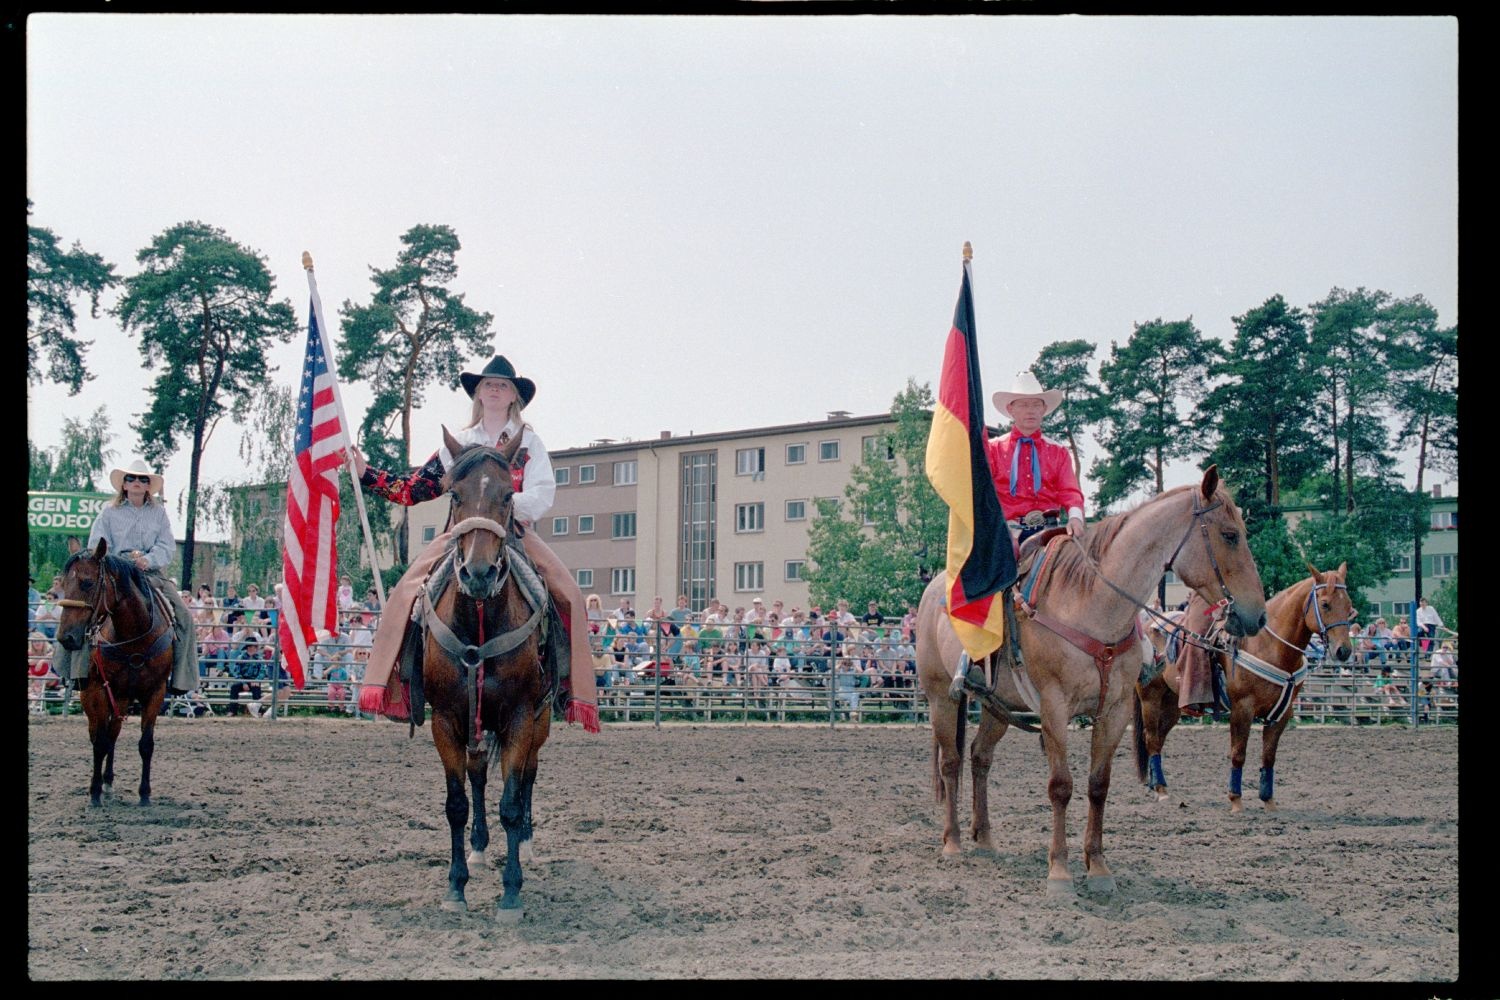 Fotografie: Rodeo Mania 1993 auf dem Festplatz Deutsch-Amerikanisches Volksfest in Berlin-Dahlem (AlliiertenMuseum/U.S. Army Photograph Public Domain Mark)